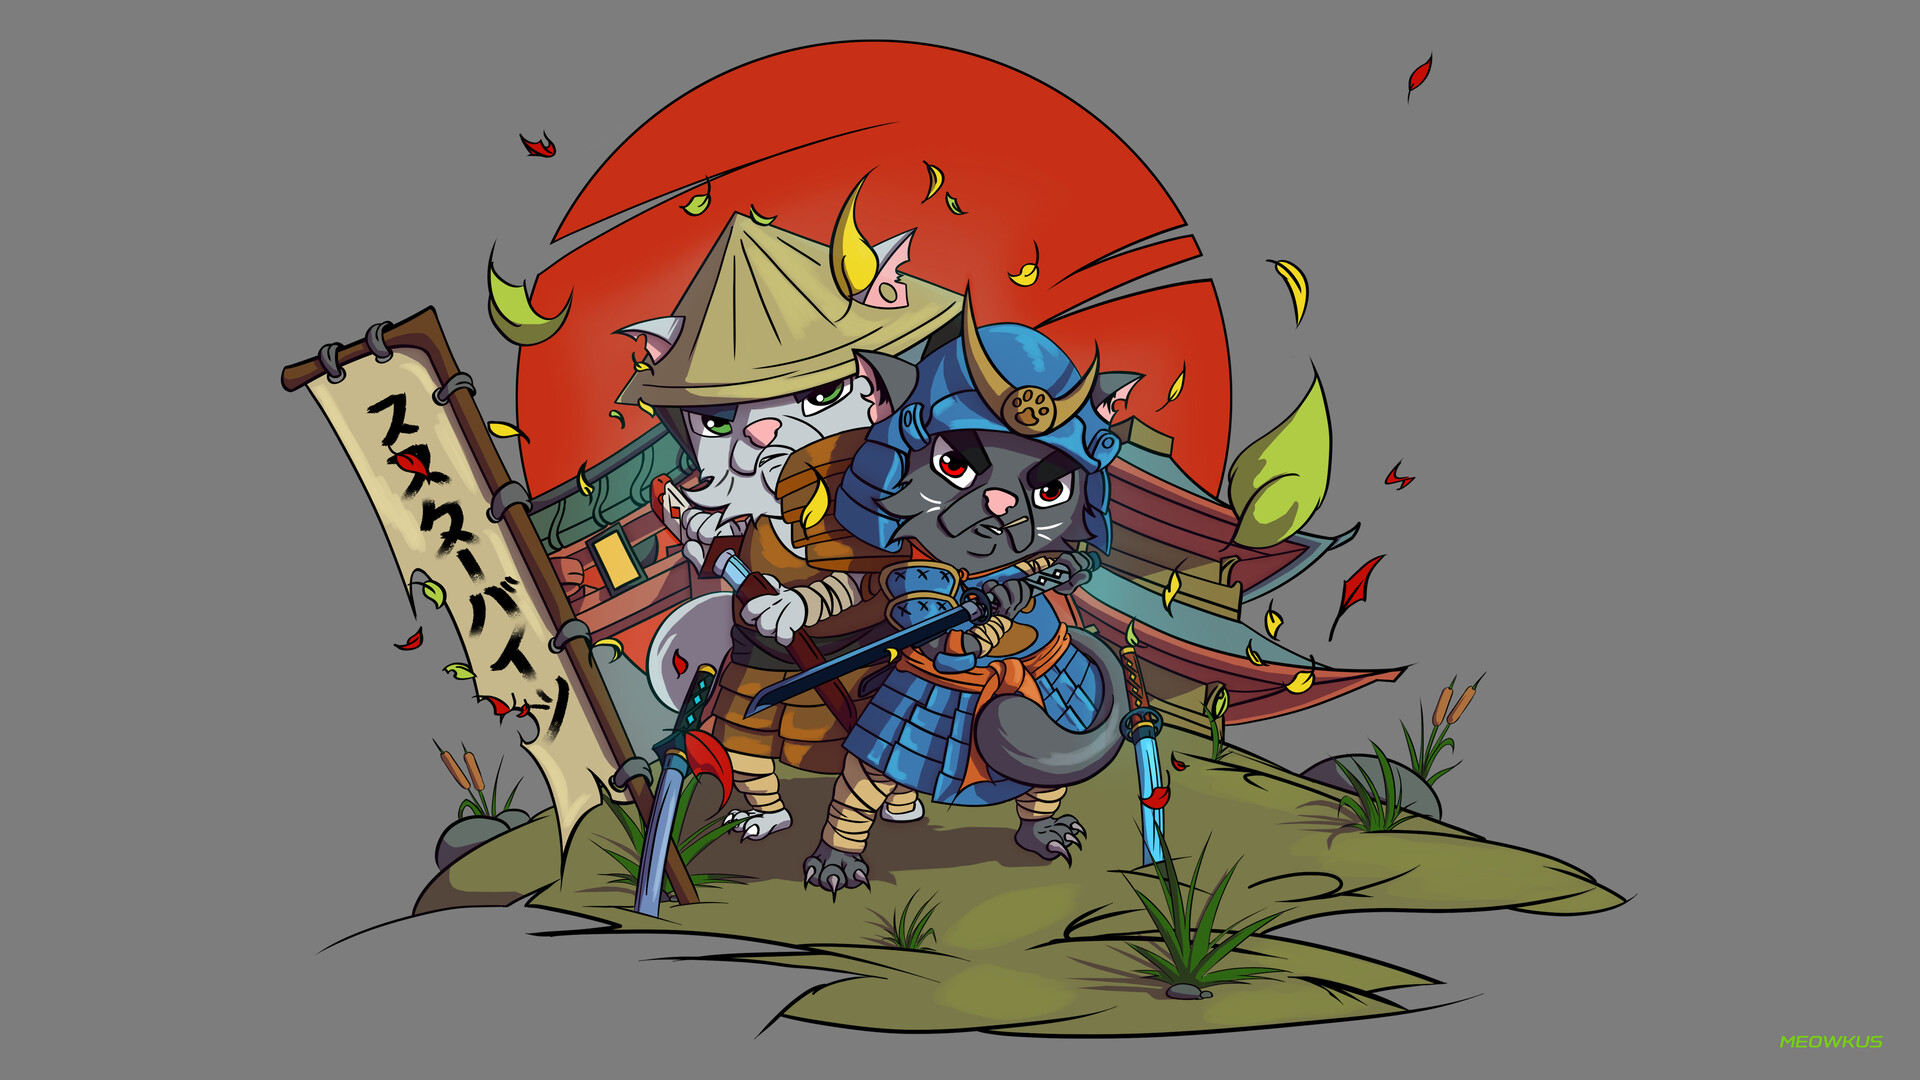 Samurmeow (Cat samurai)